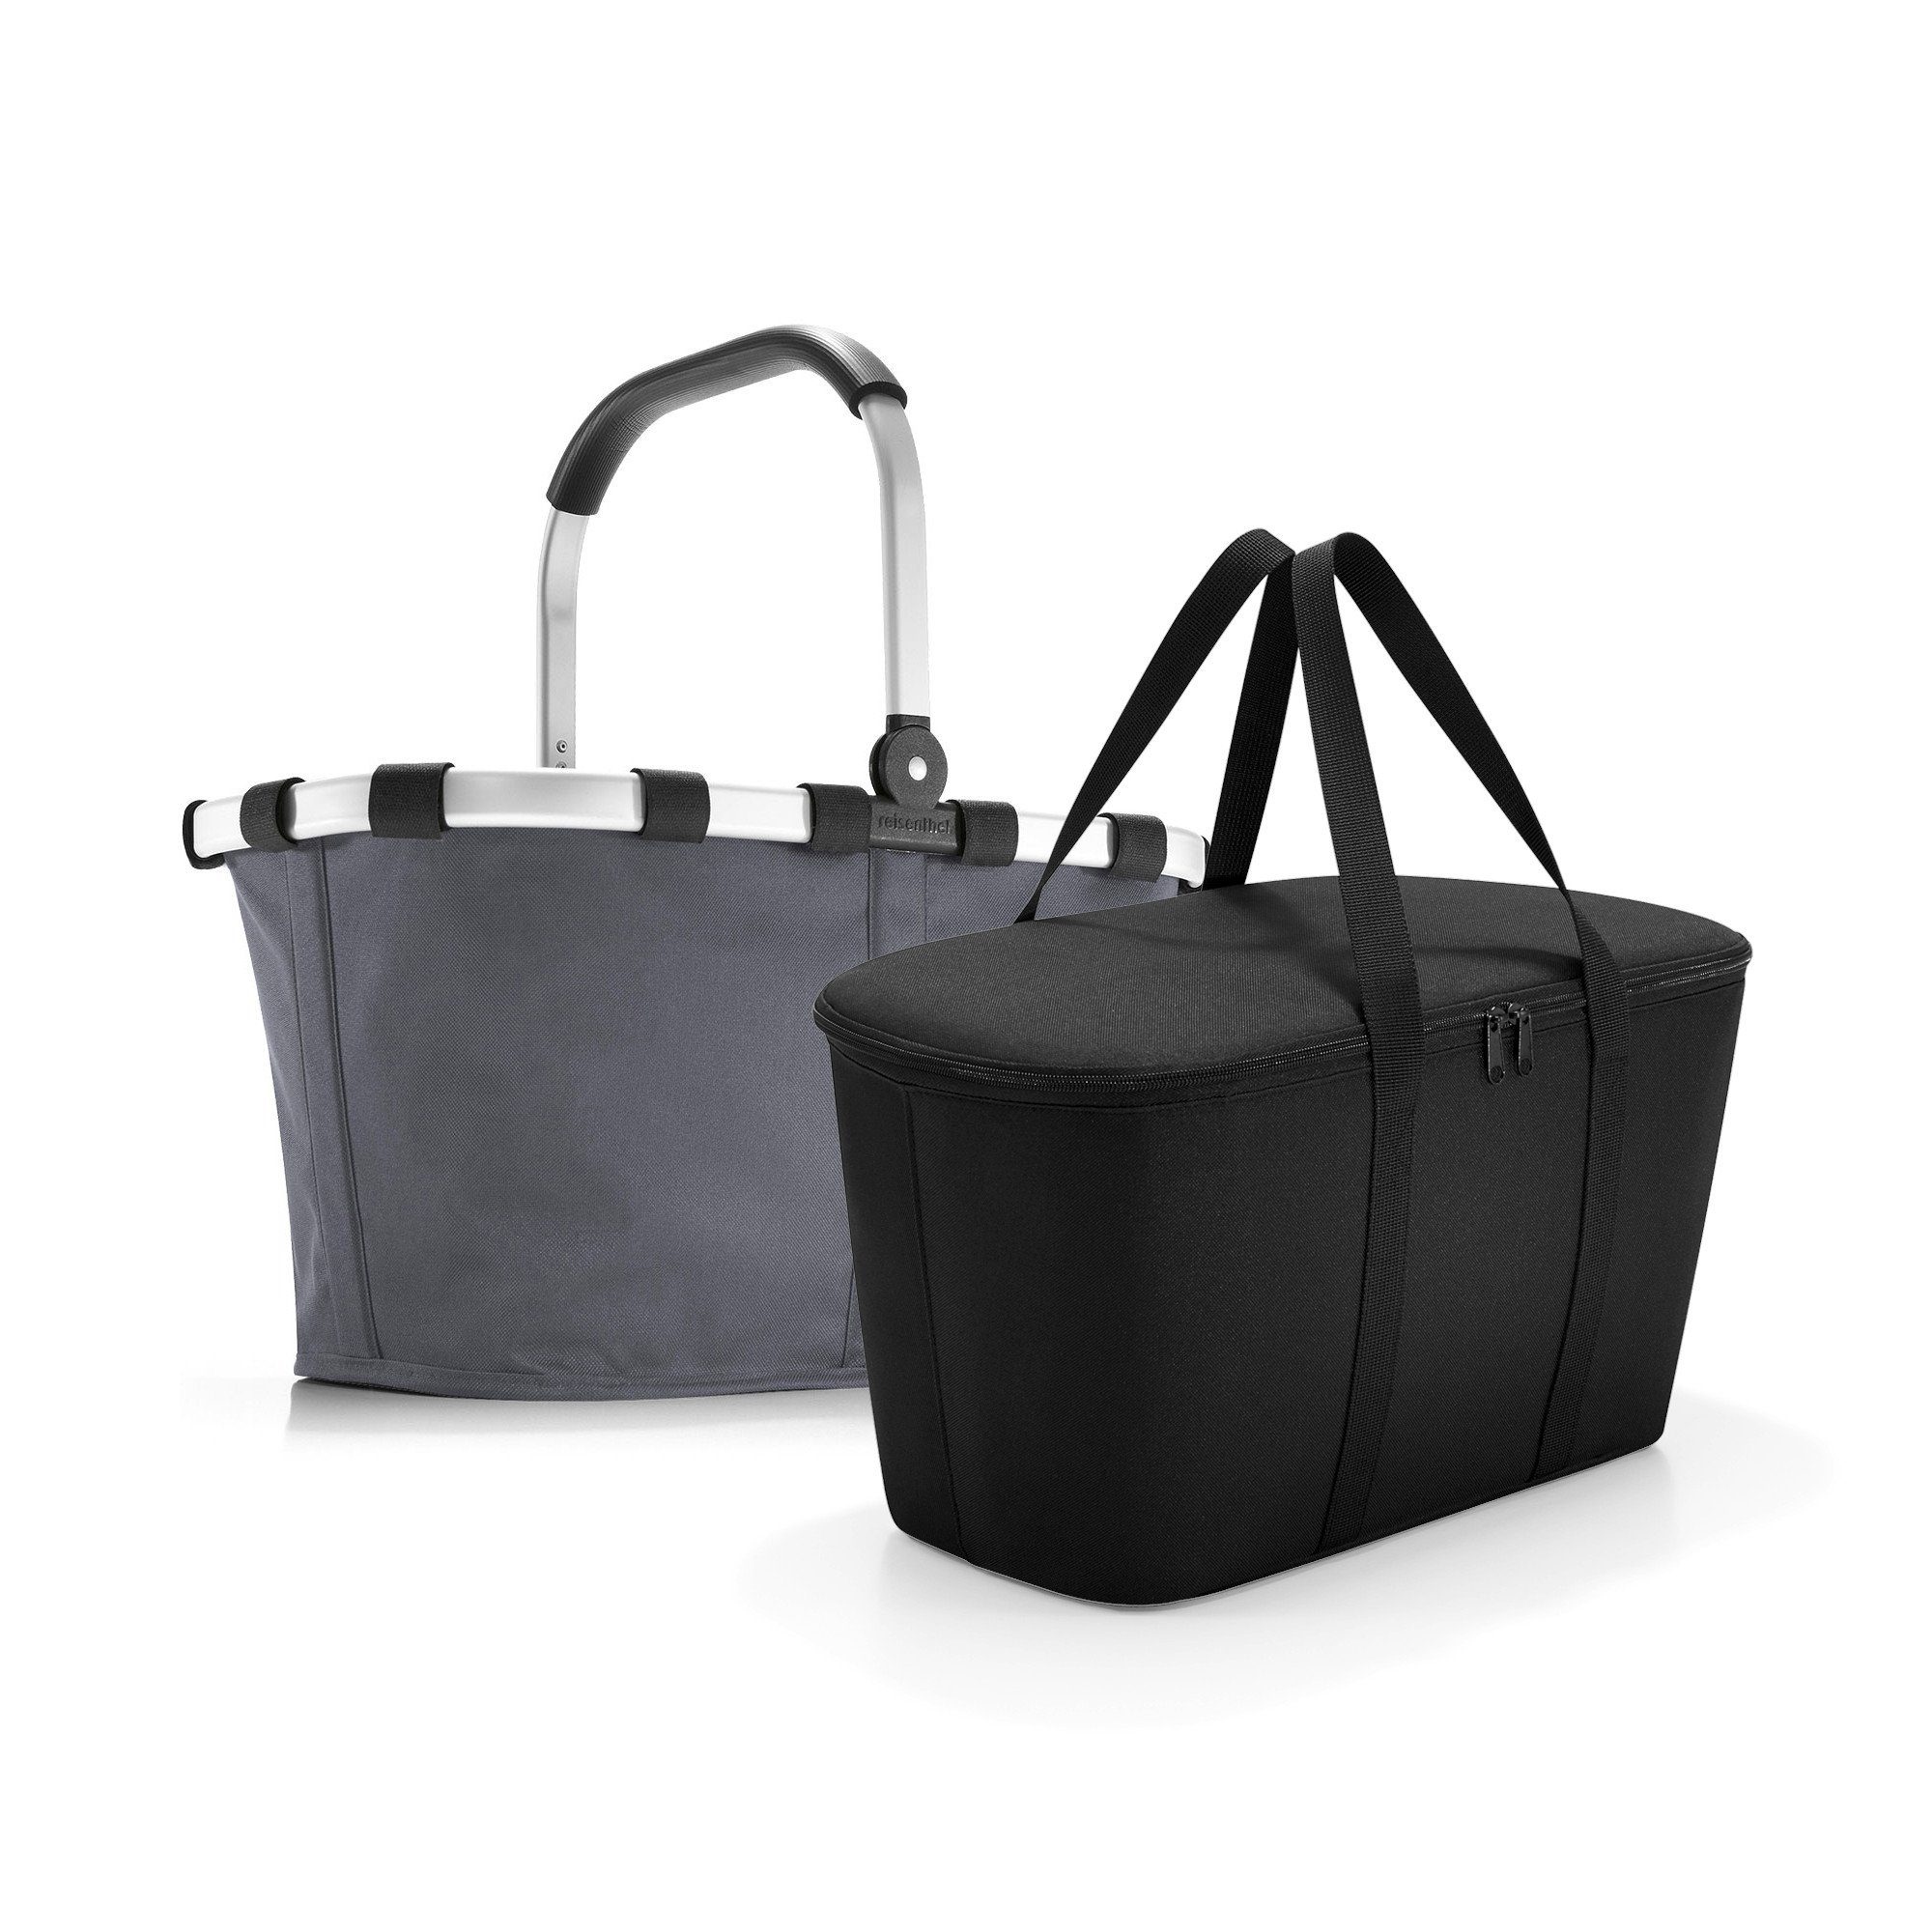 Thermotasche REISENTHEL® aus frame Einkaufskorb coolerbag, Picknick Einkaufskorb black carrybag und Isotasche Set signature